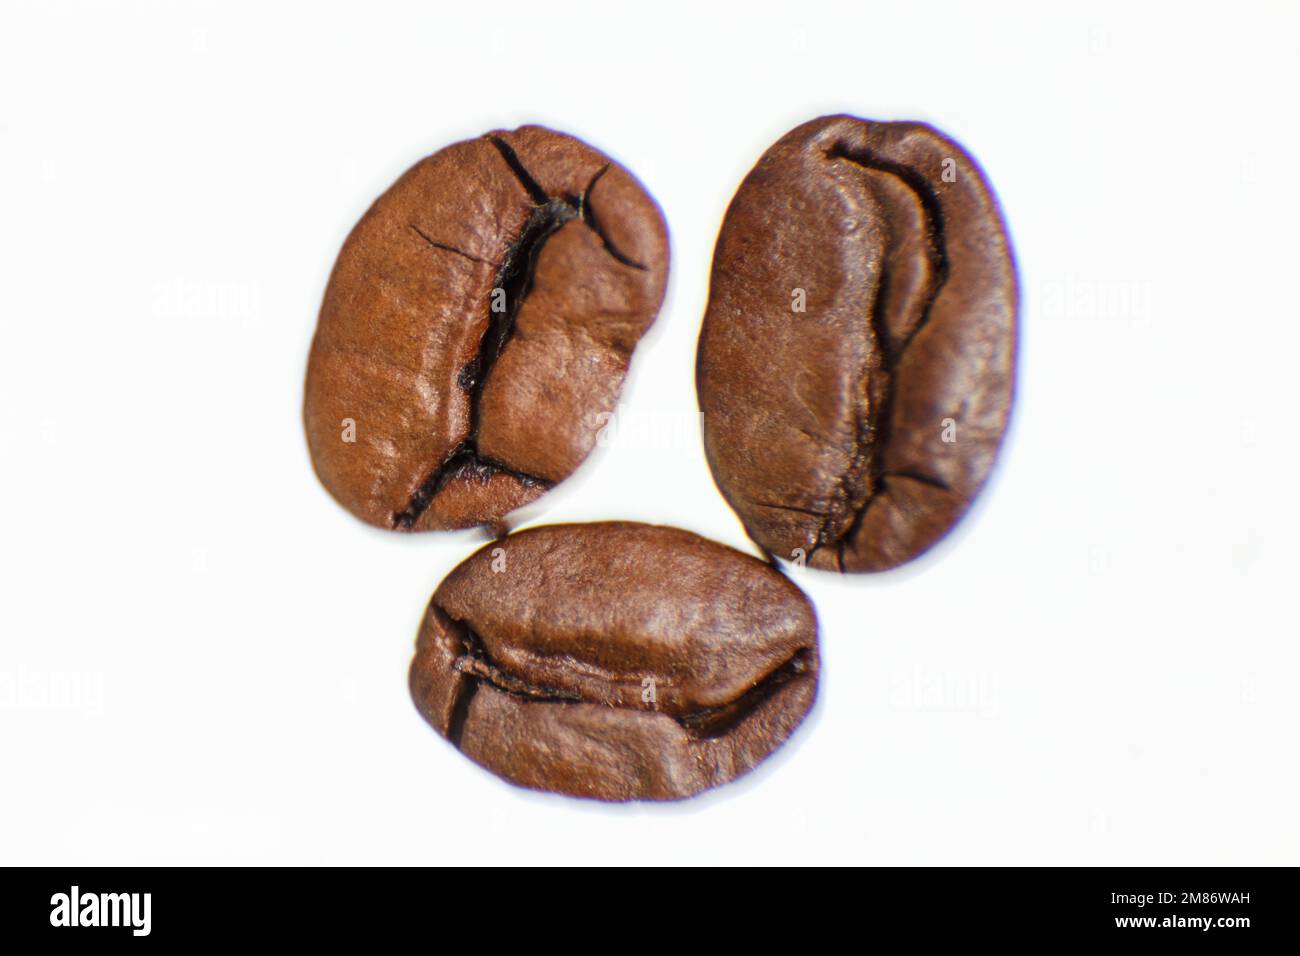 plusieurs grains de café photographiés sur fond blanc. Photo de haute qualité Banque D'Images